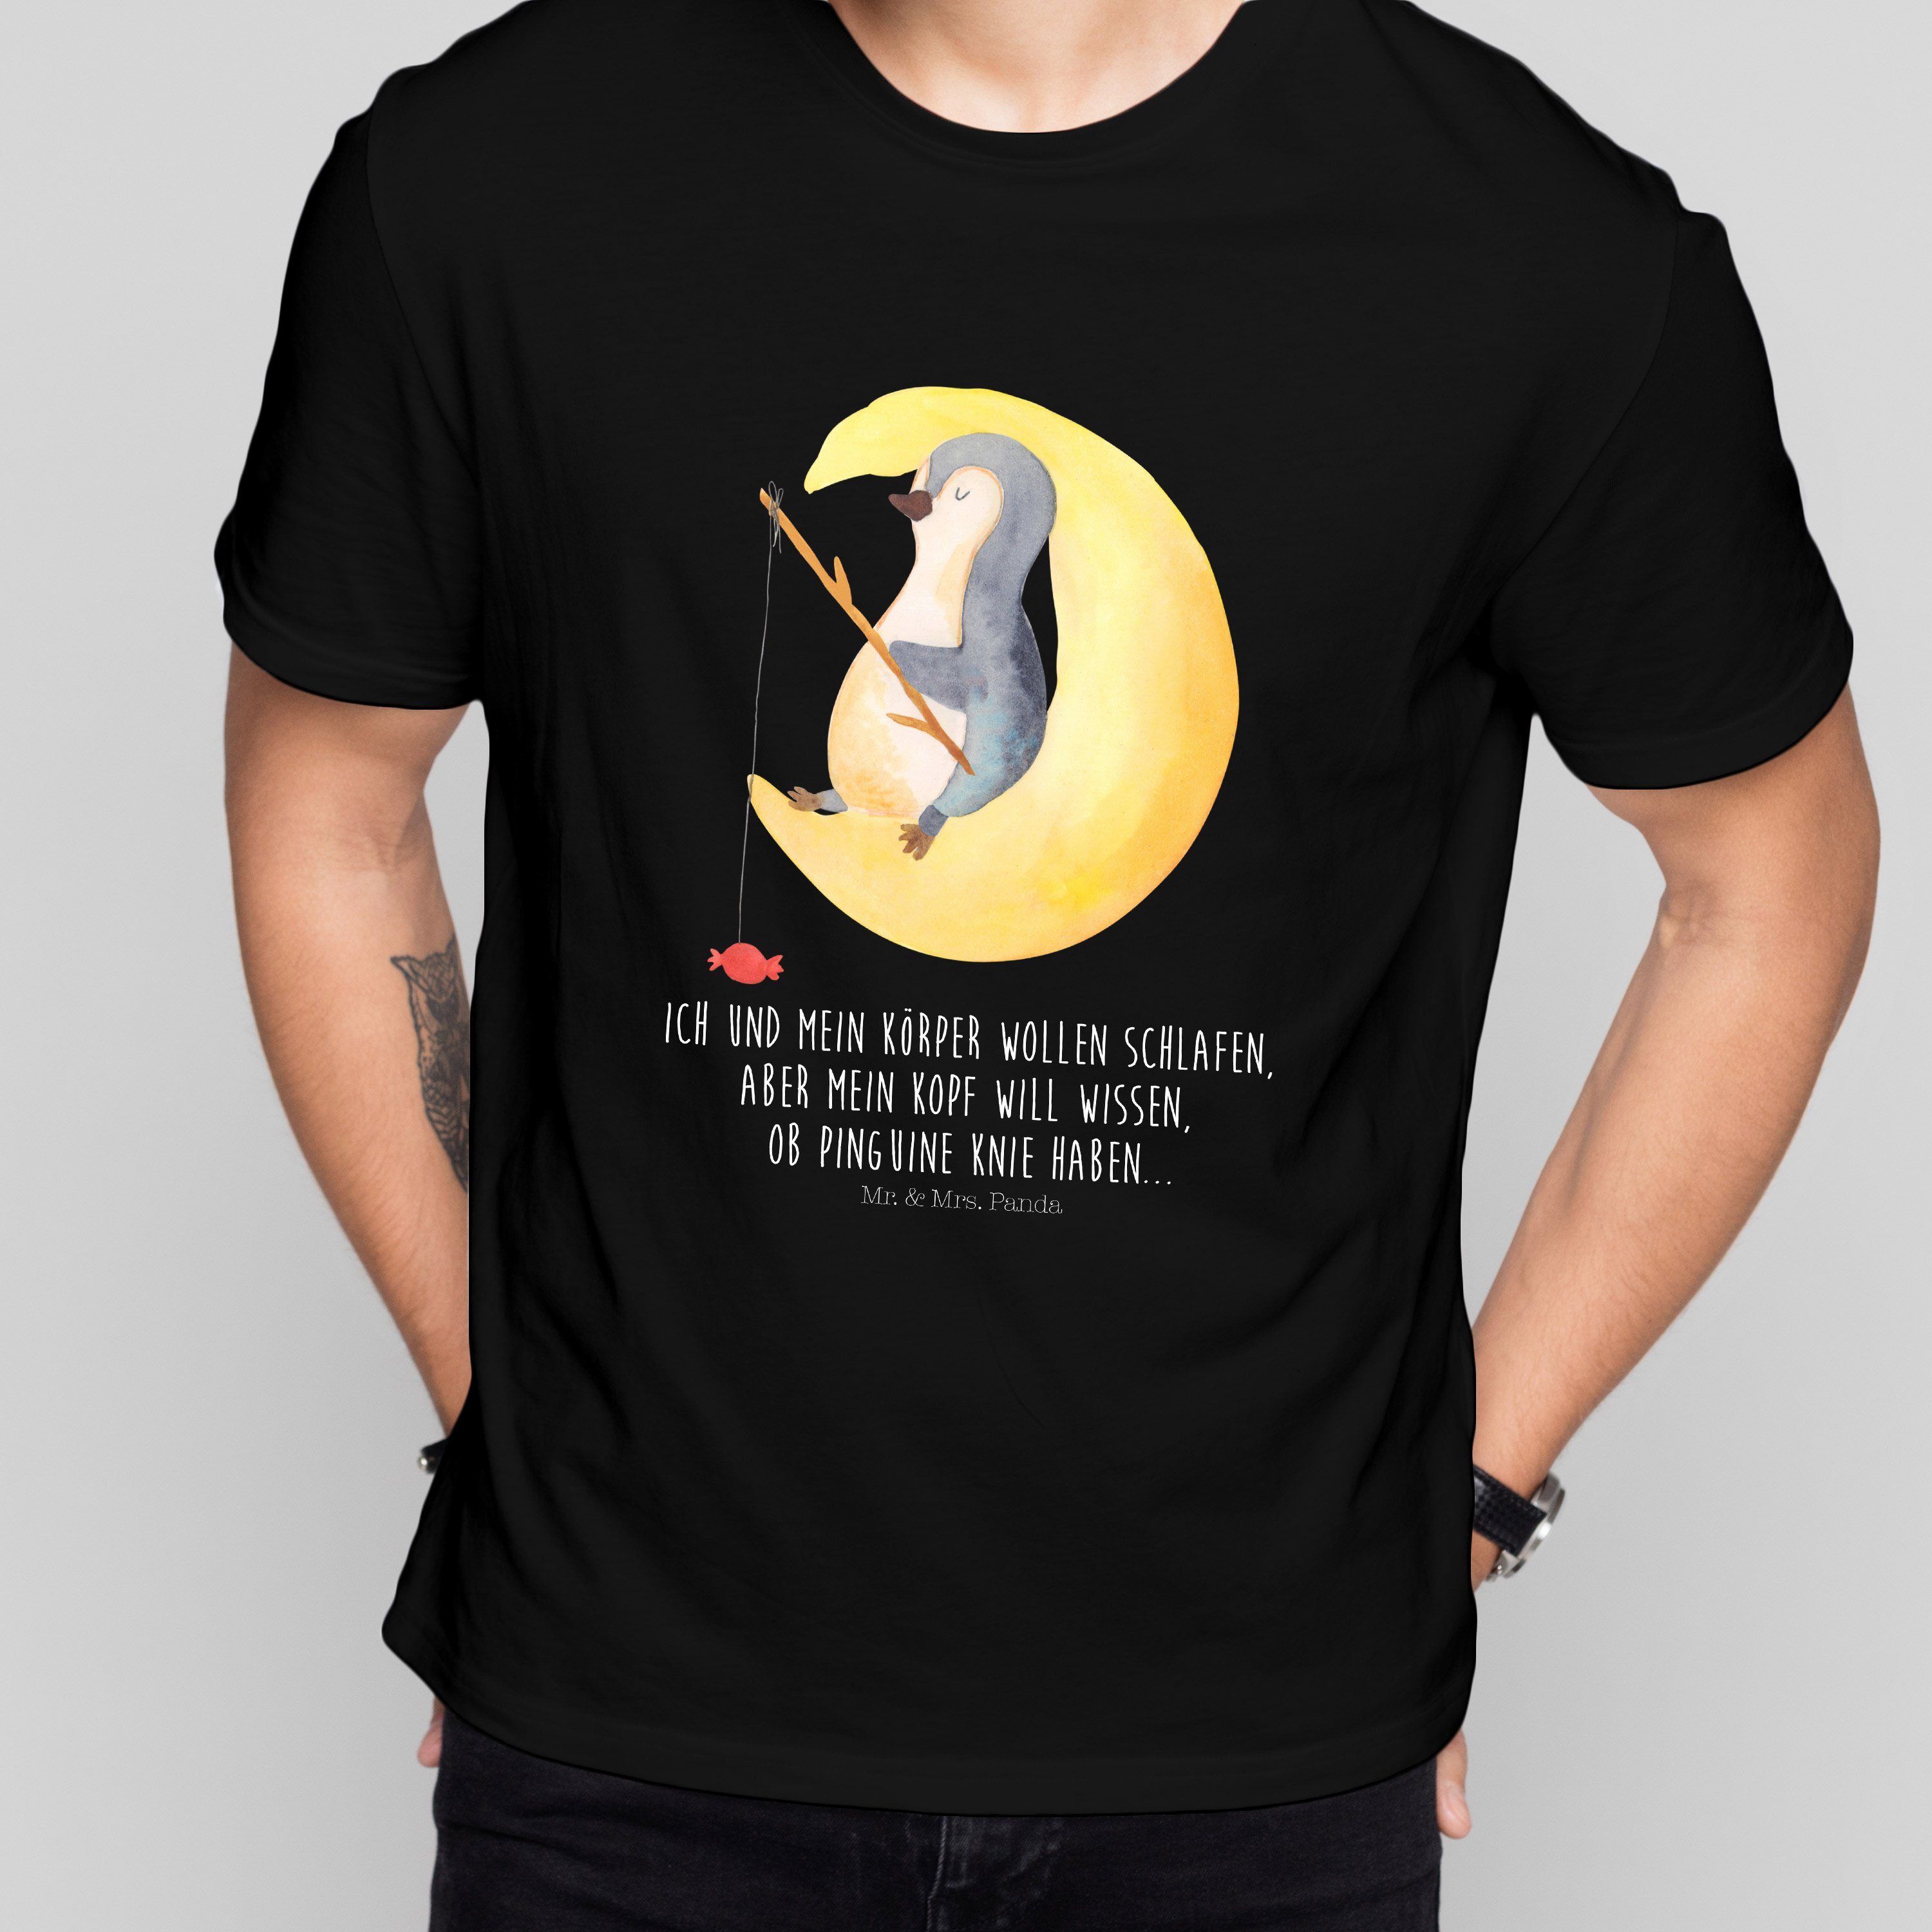 Mr. & Mrs. Panda T-Shirt Schwarz Mond Pinguine, T-Shirt mit Herr Pinguin Spruch, Geschenk, - (1-tlg) 